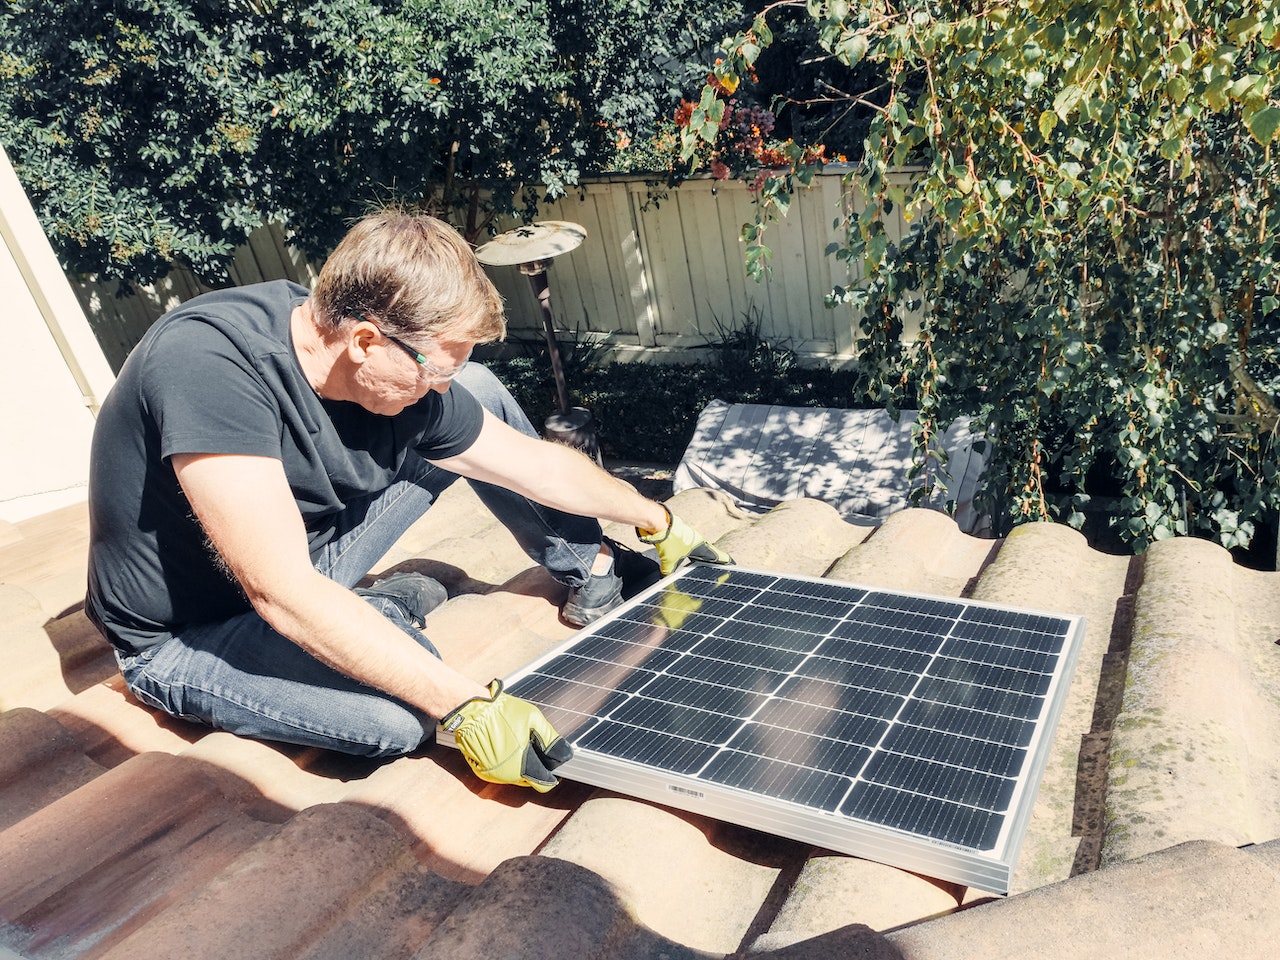 Proiect REPowerEU: Voucher de 25.000 de lei pentru panouri solare și sisteme de stocare a energiei